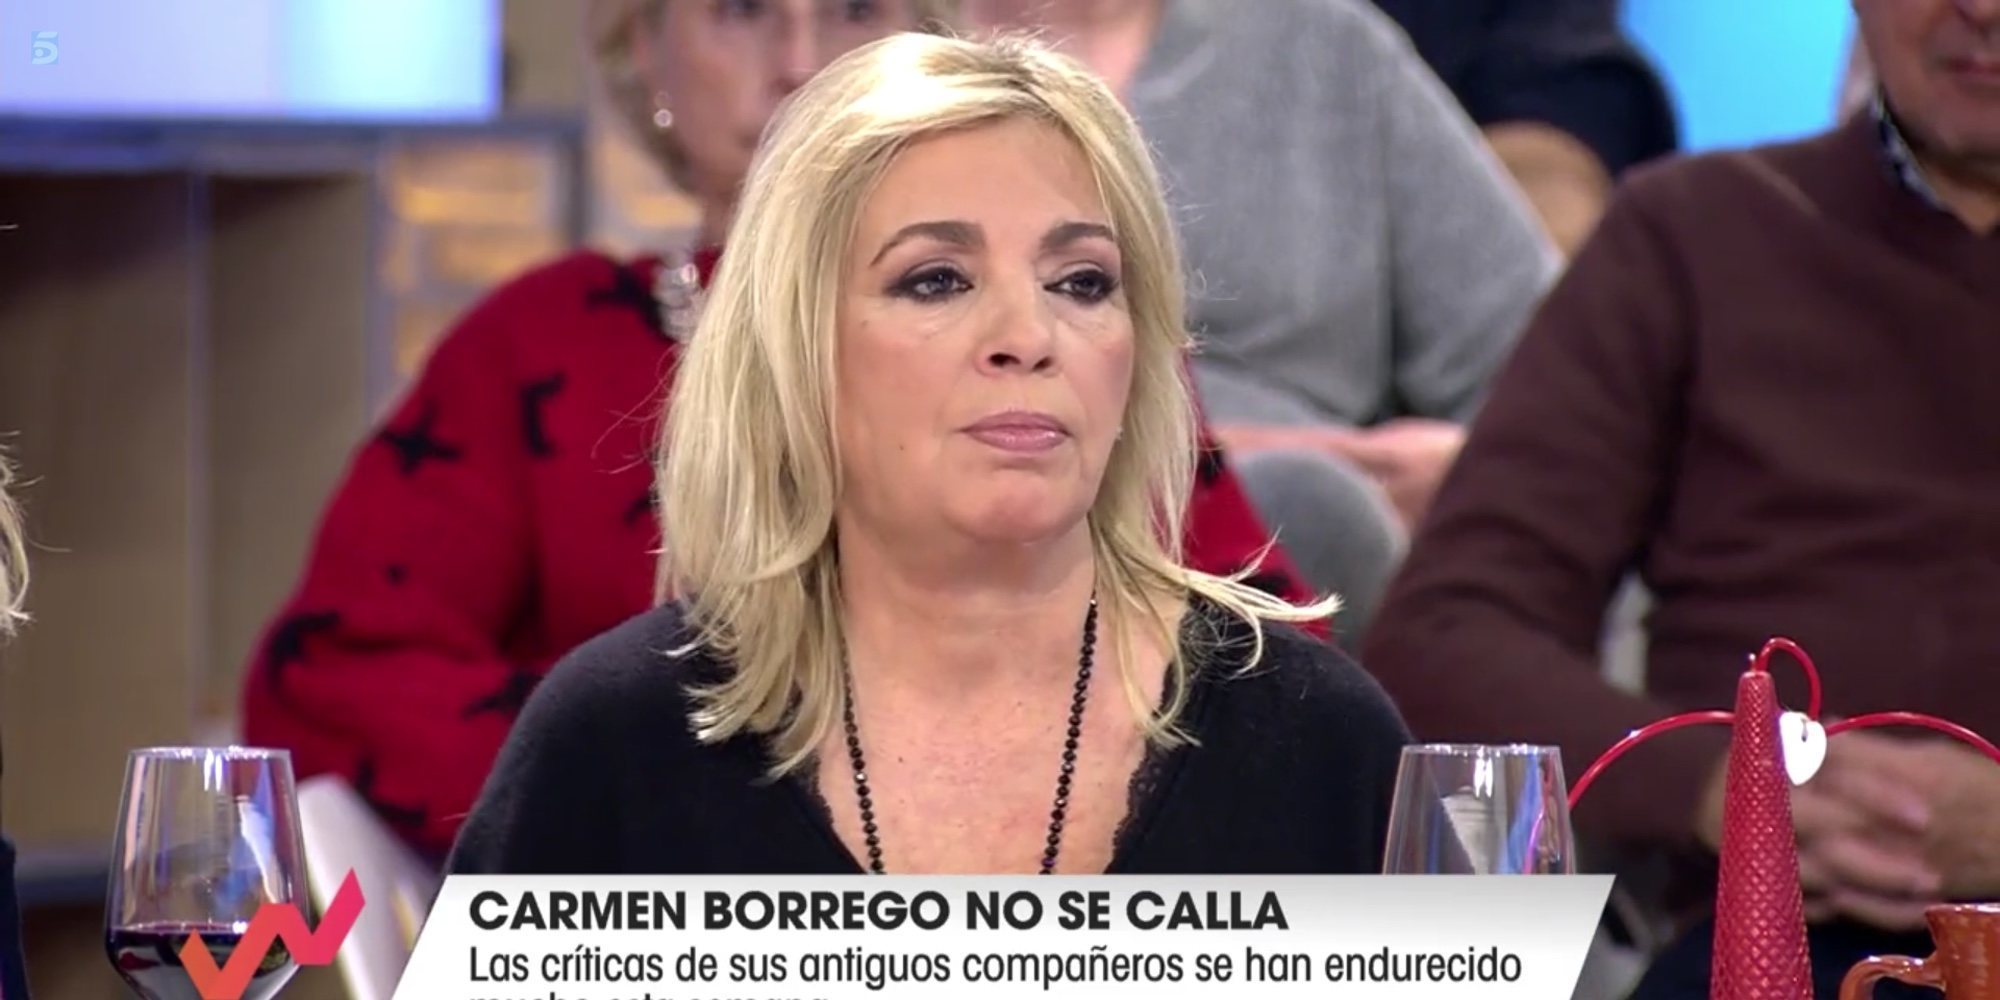 Carmen Borrego, harta de la presión mediática pero dispuesta a reconciliarse con María Patiño